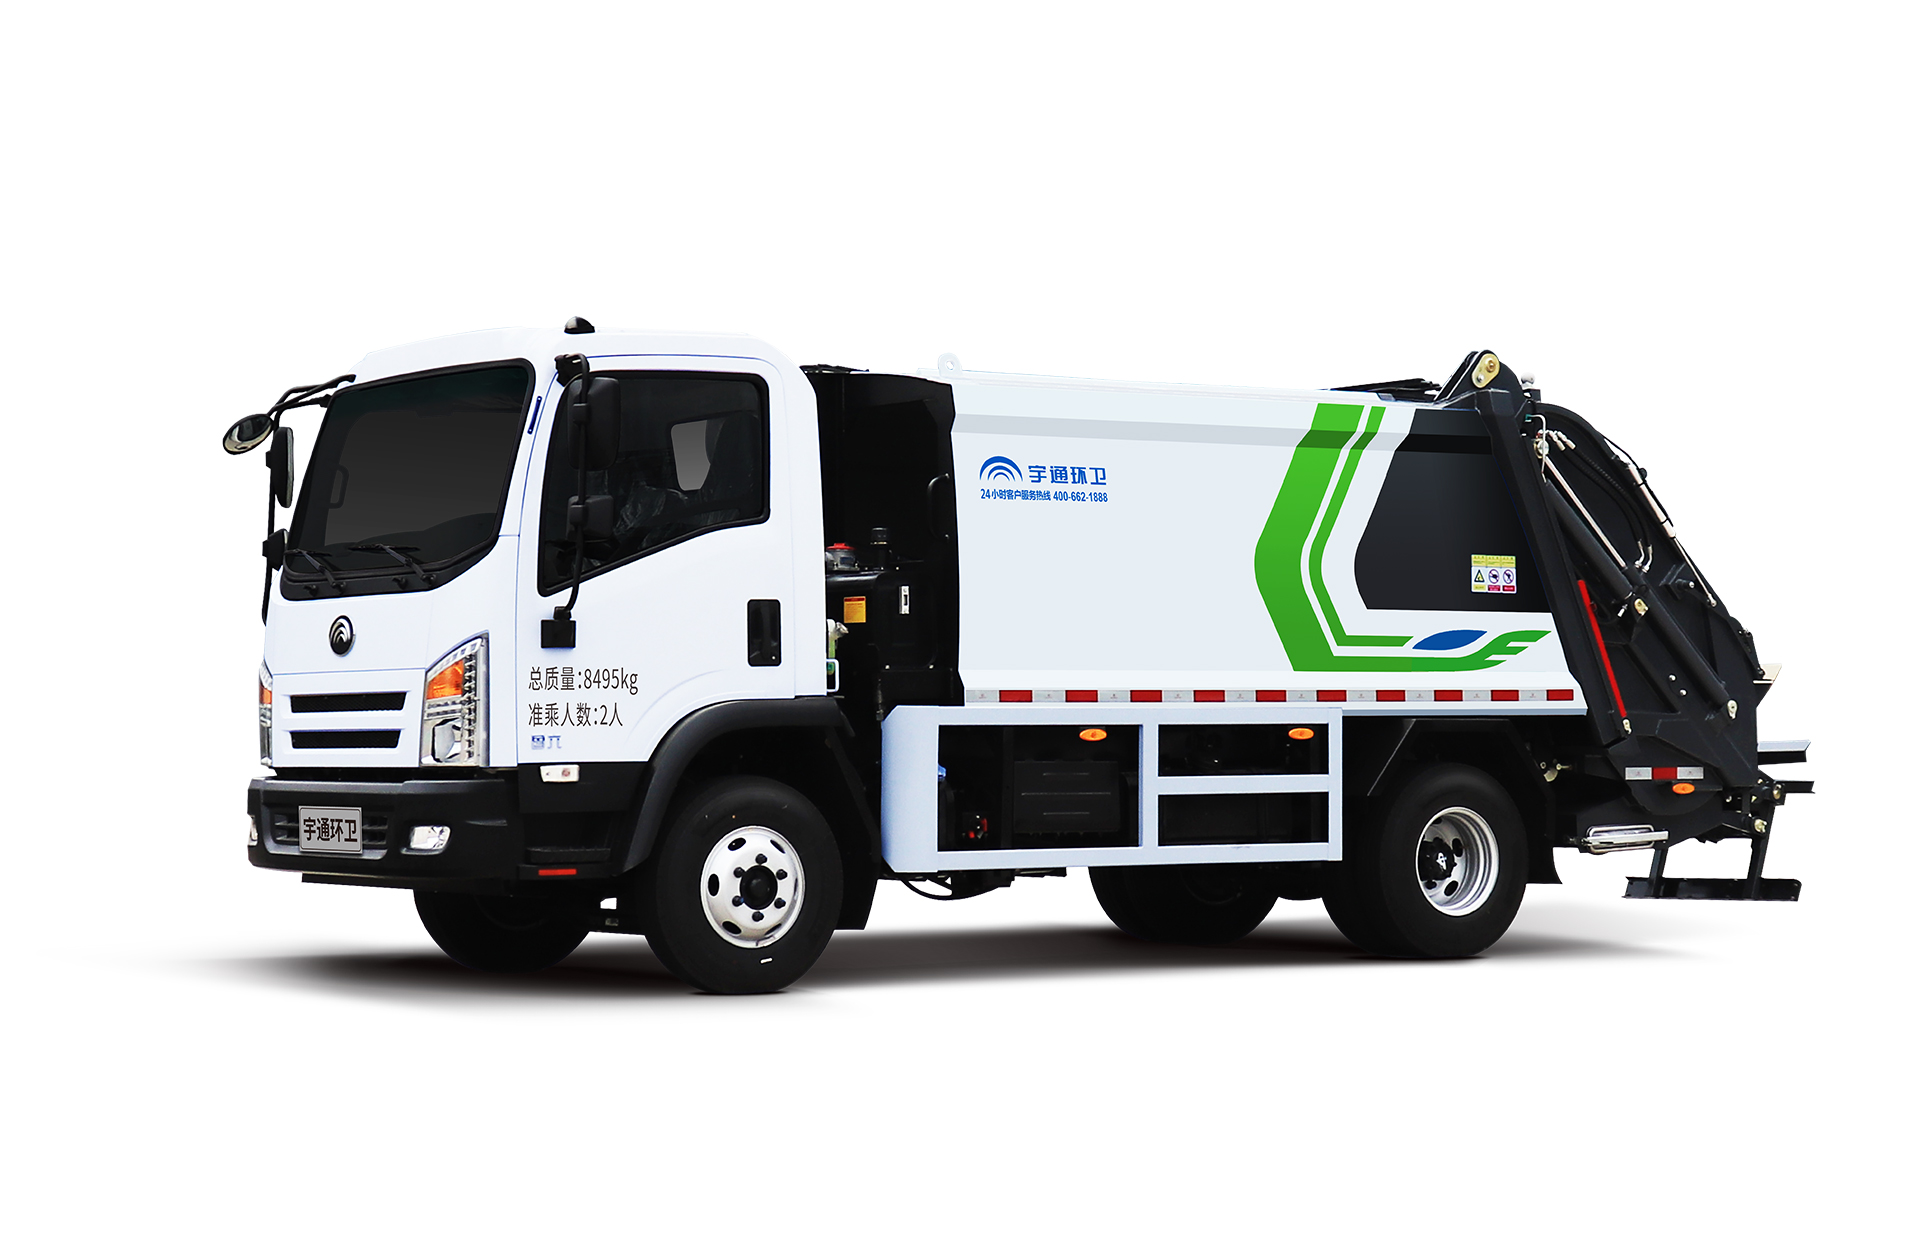 8t壓縮式垃圾車 宇通環衛壓縮式垃圾車主要具有裝載能力強、垃圾可壓縮、密封性能好等特點。